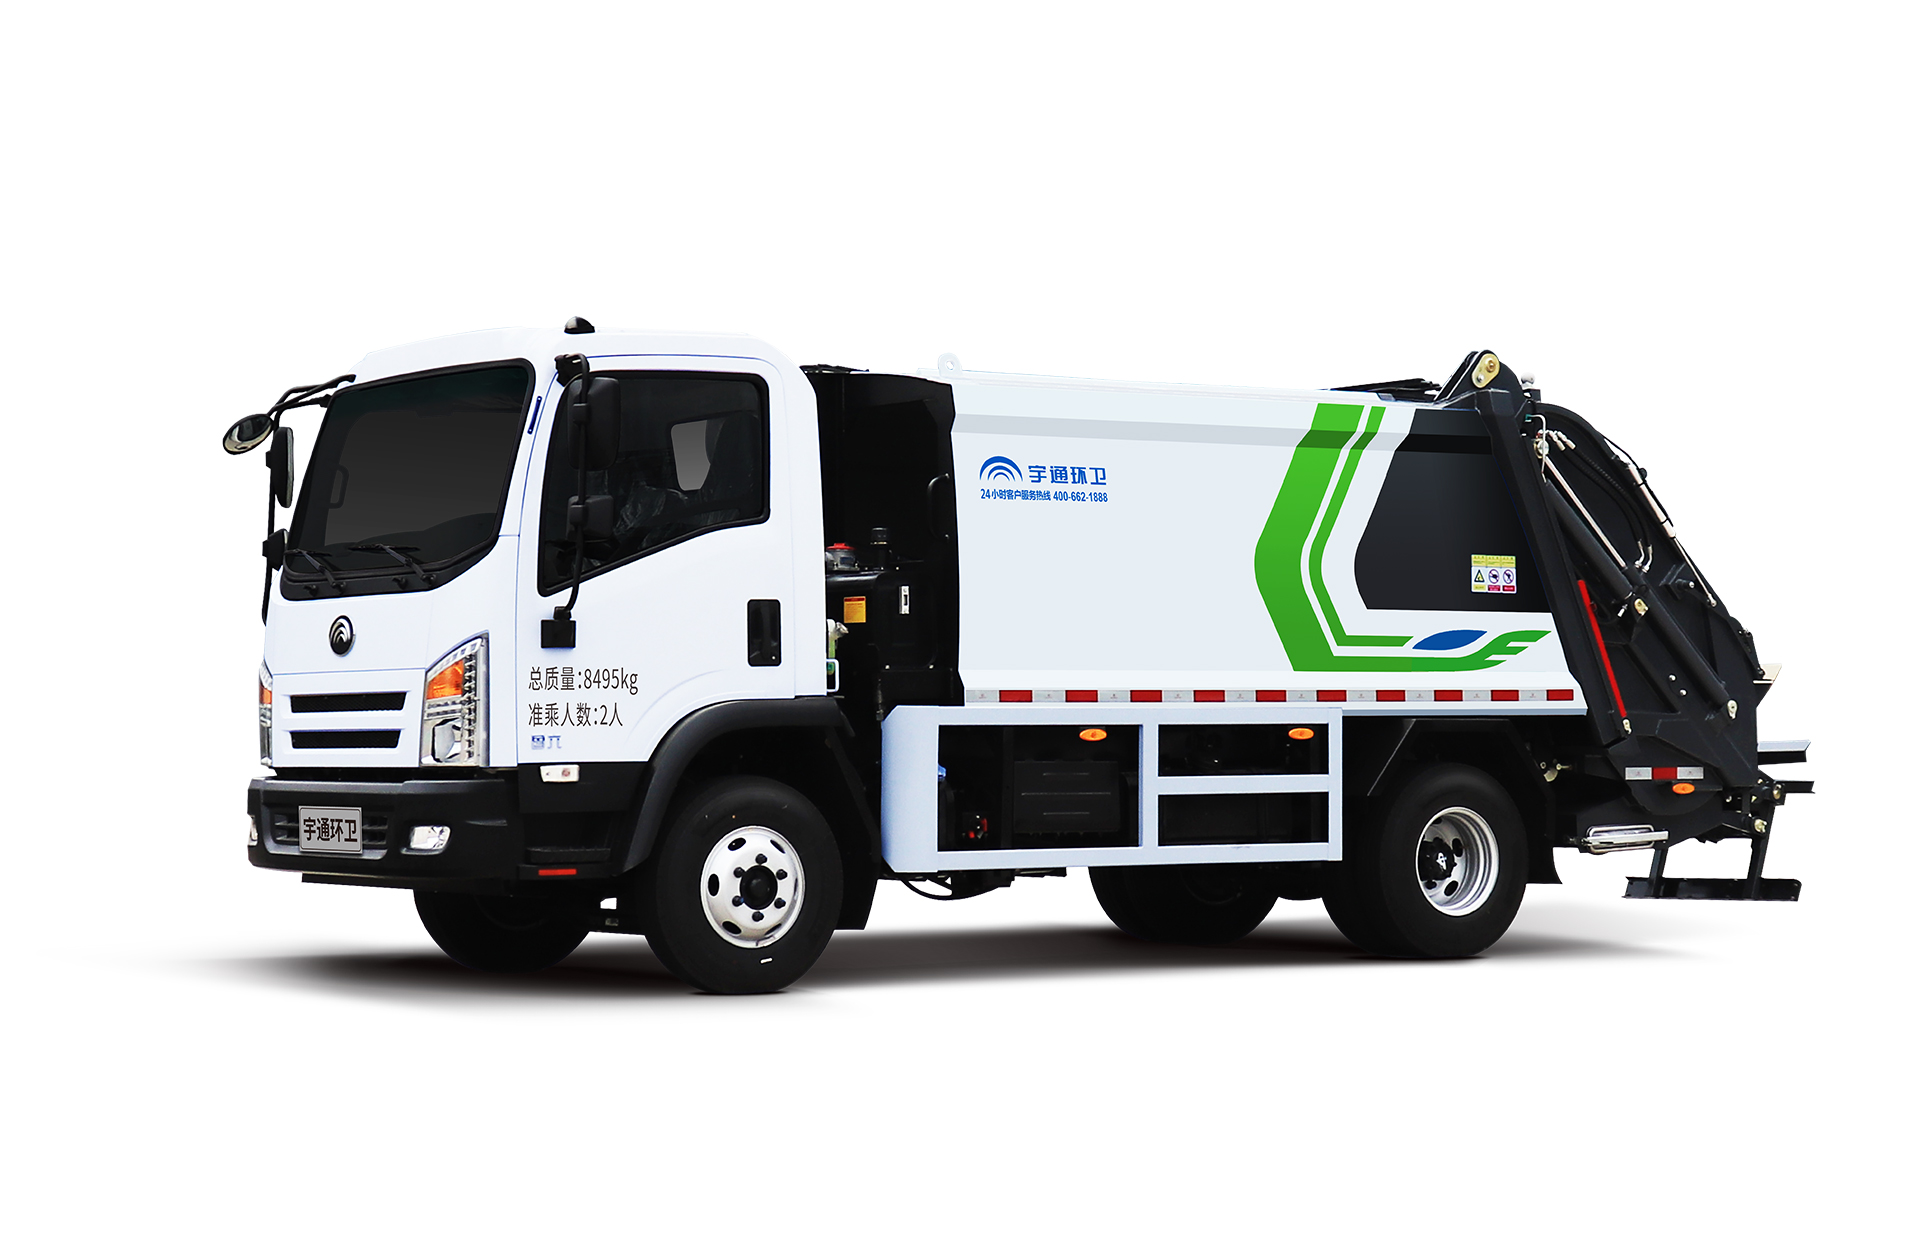 8t壓縮式垃圾車 宇通環衛壓縮式垃圾車主要具有裝載能力強、垃圾可壓縮、密封性能好等特點。